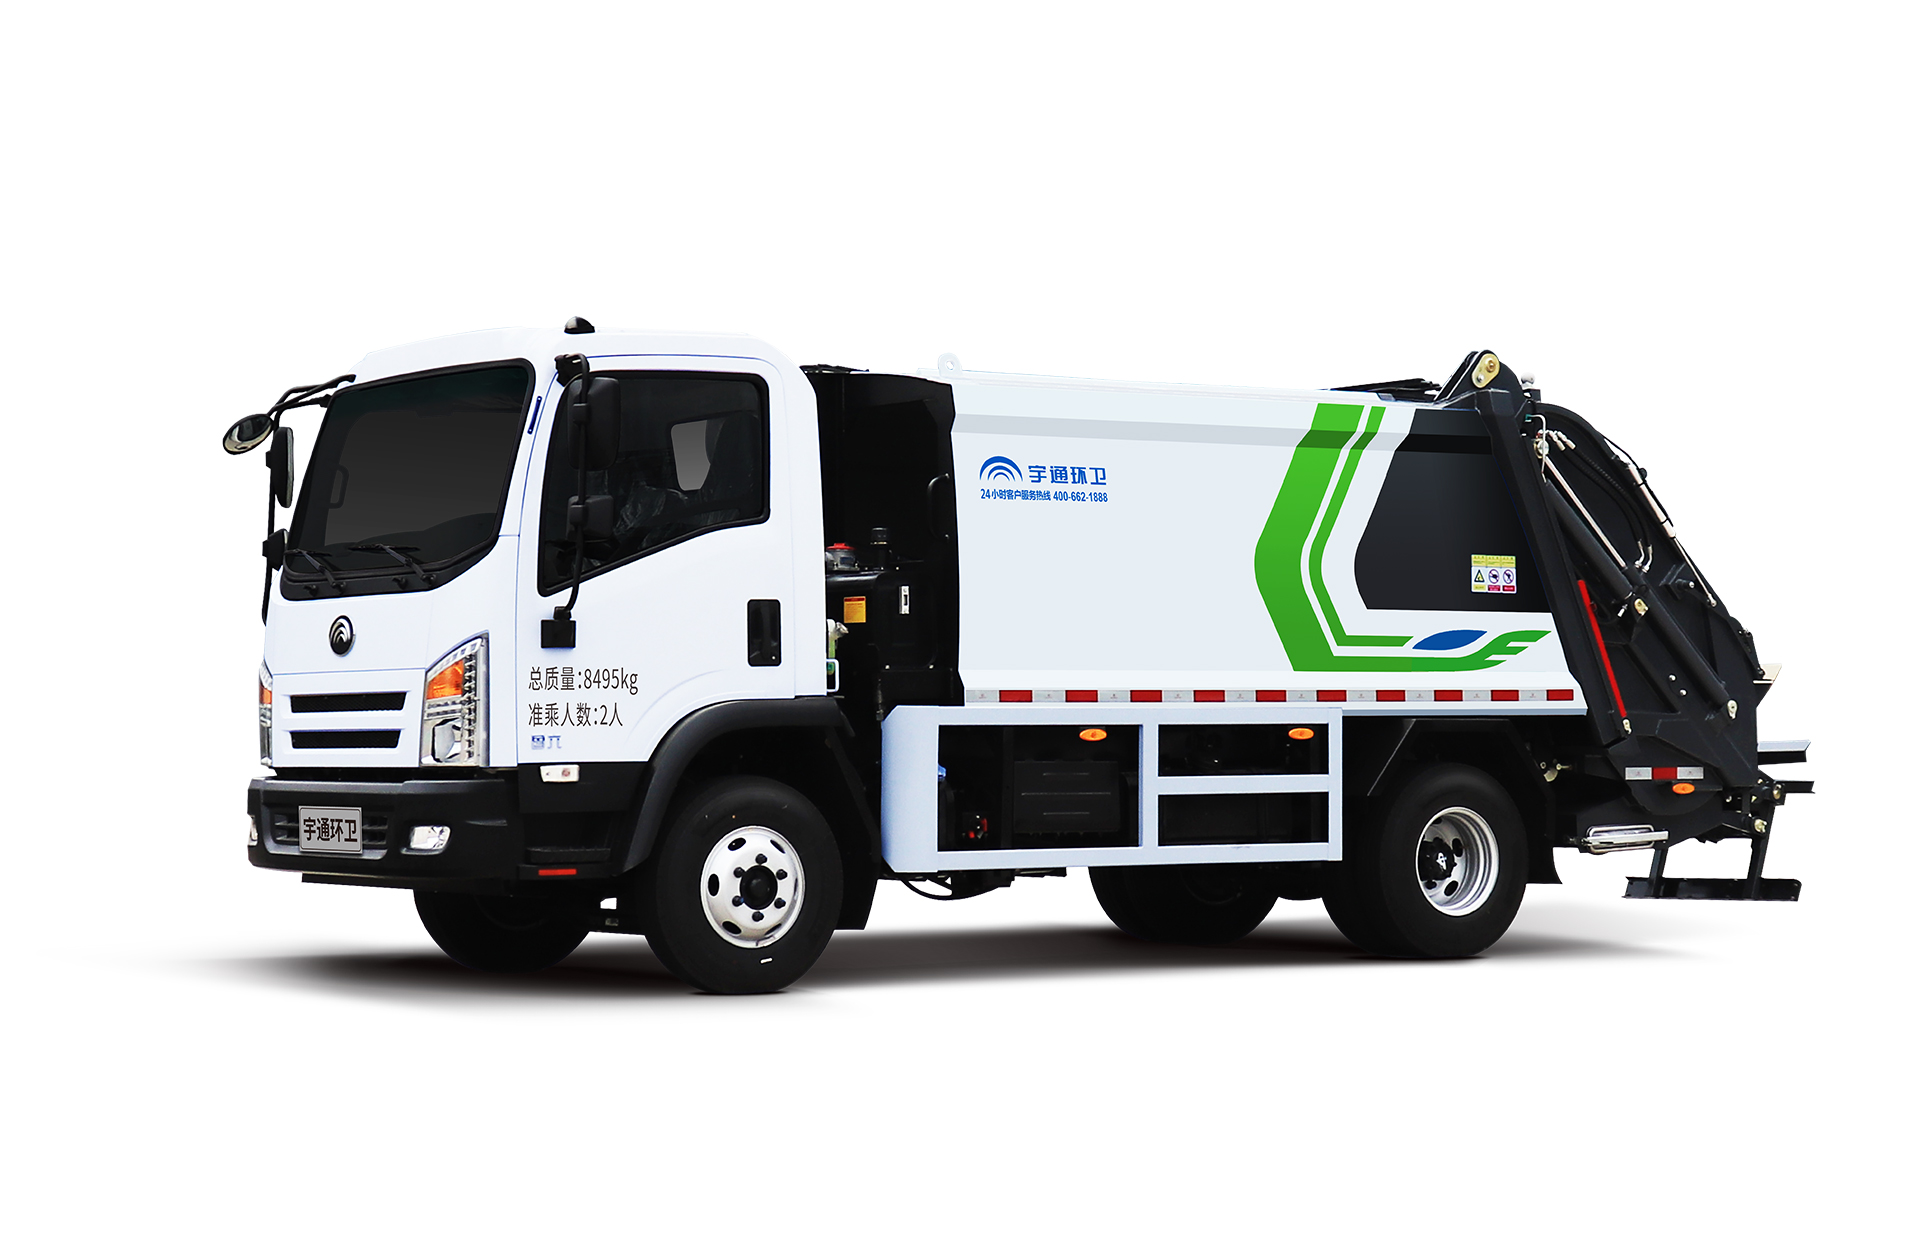 8t壓縮式垃圾車 宇通環衛壓縮式垃圾車主要具有裝載能力強、垃圾可壓縮、密封性能好等特點。